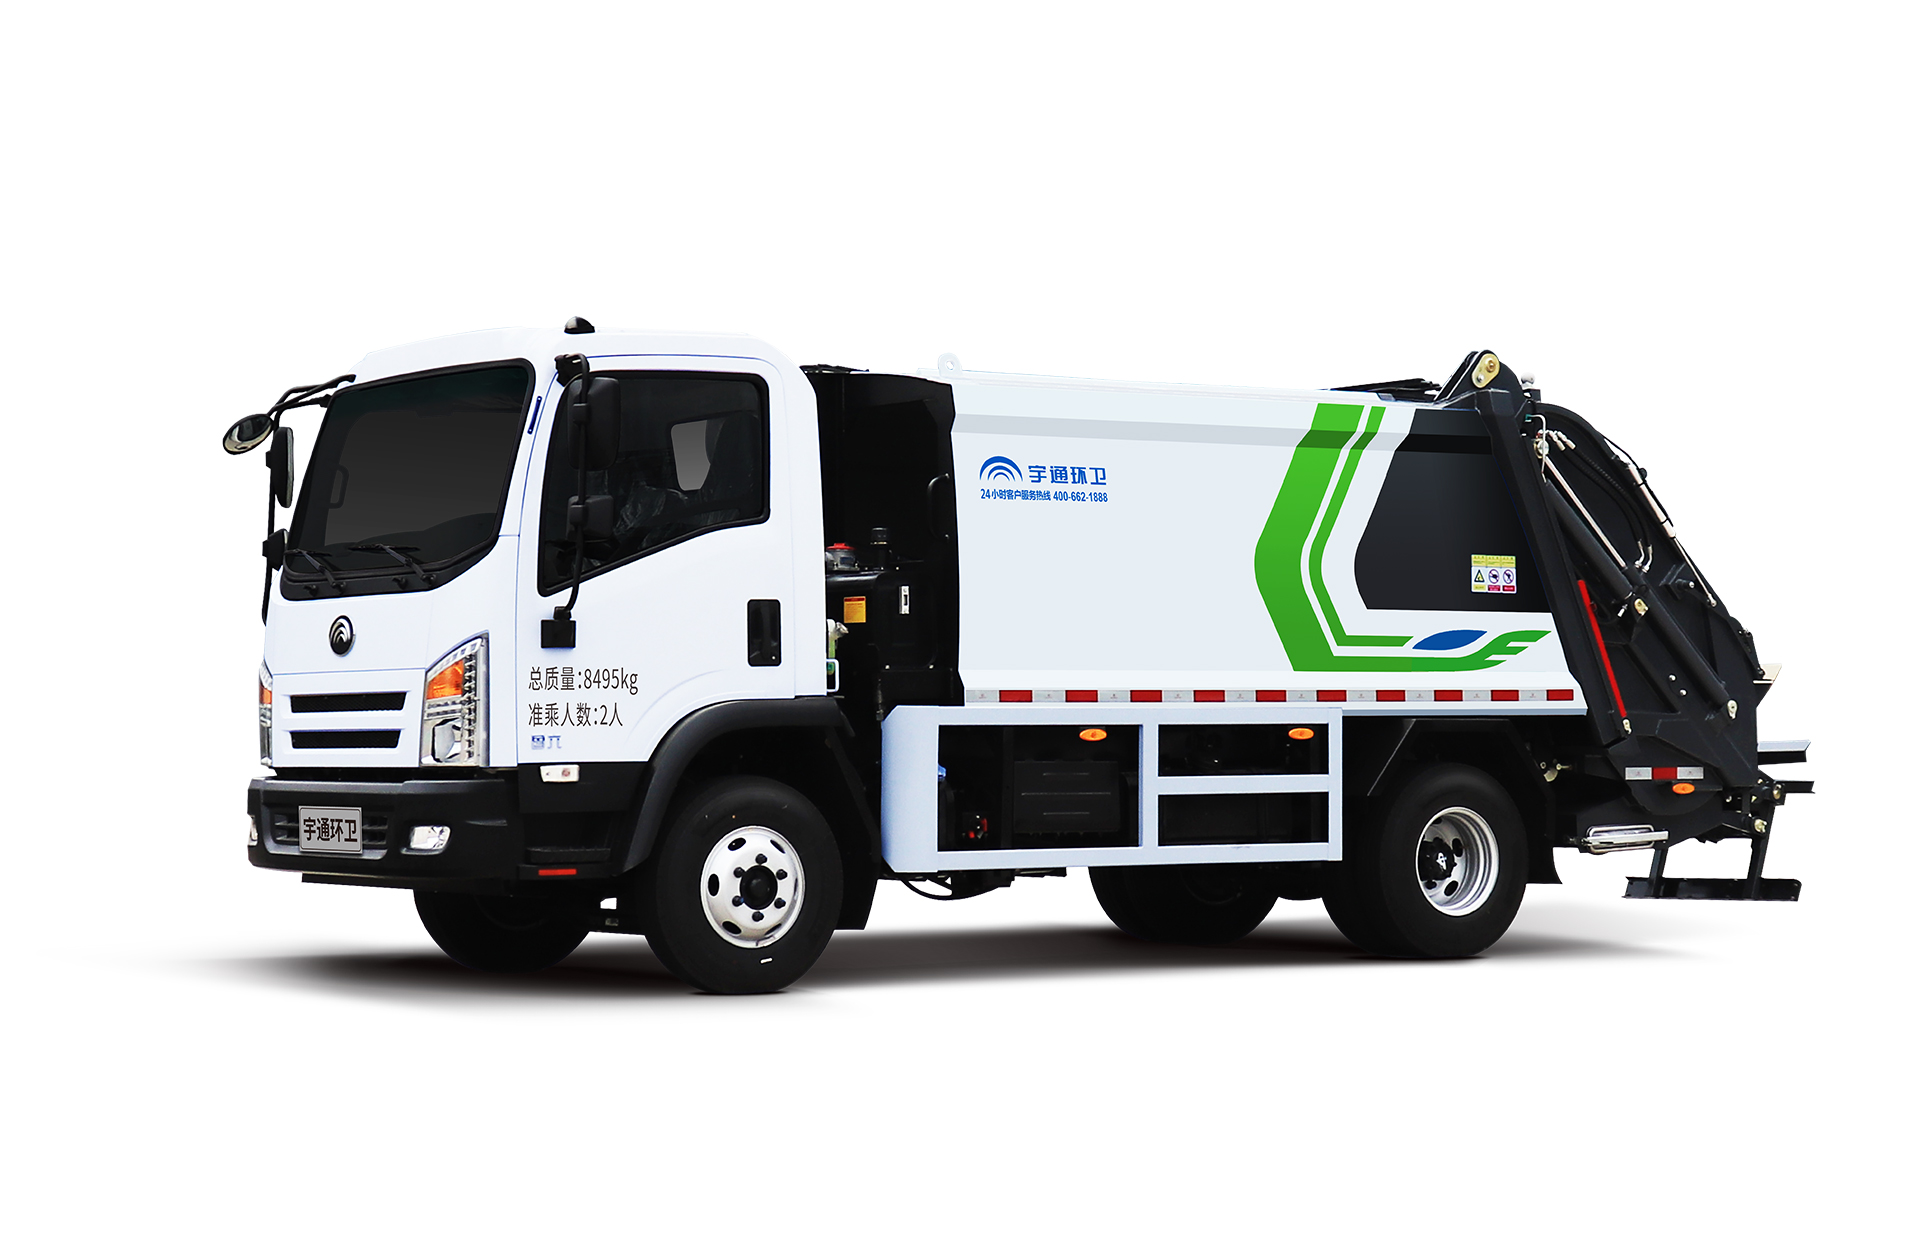 8t壓縮式垃圾車 宇通環衛壓縮式垃圾車主要具有裝載能力強、垃圾可壓縮、密封性能好等特點。